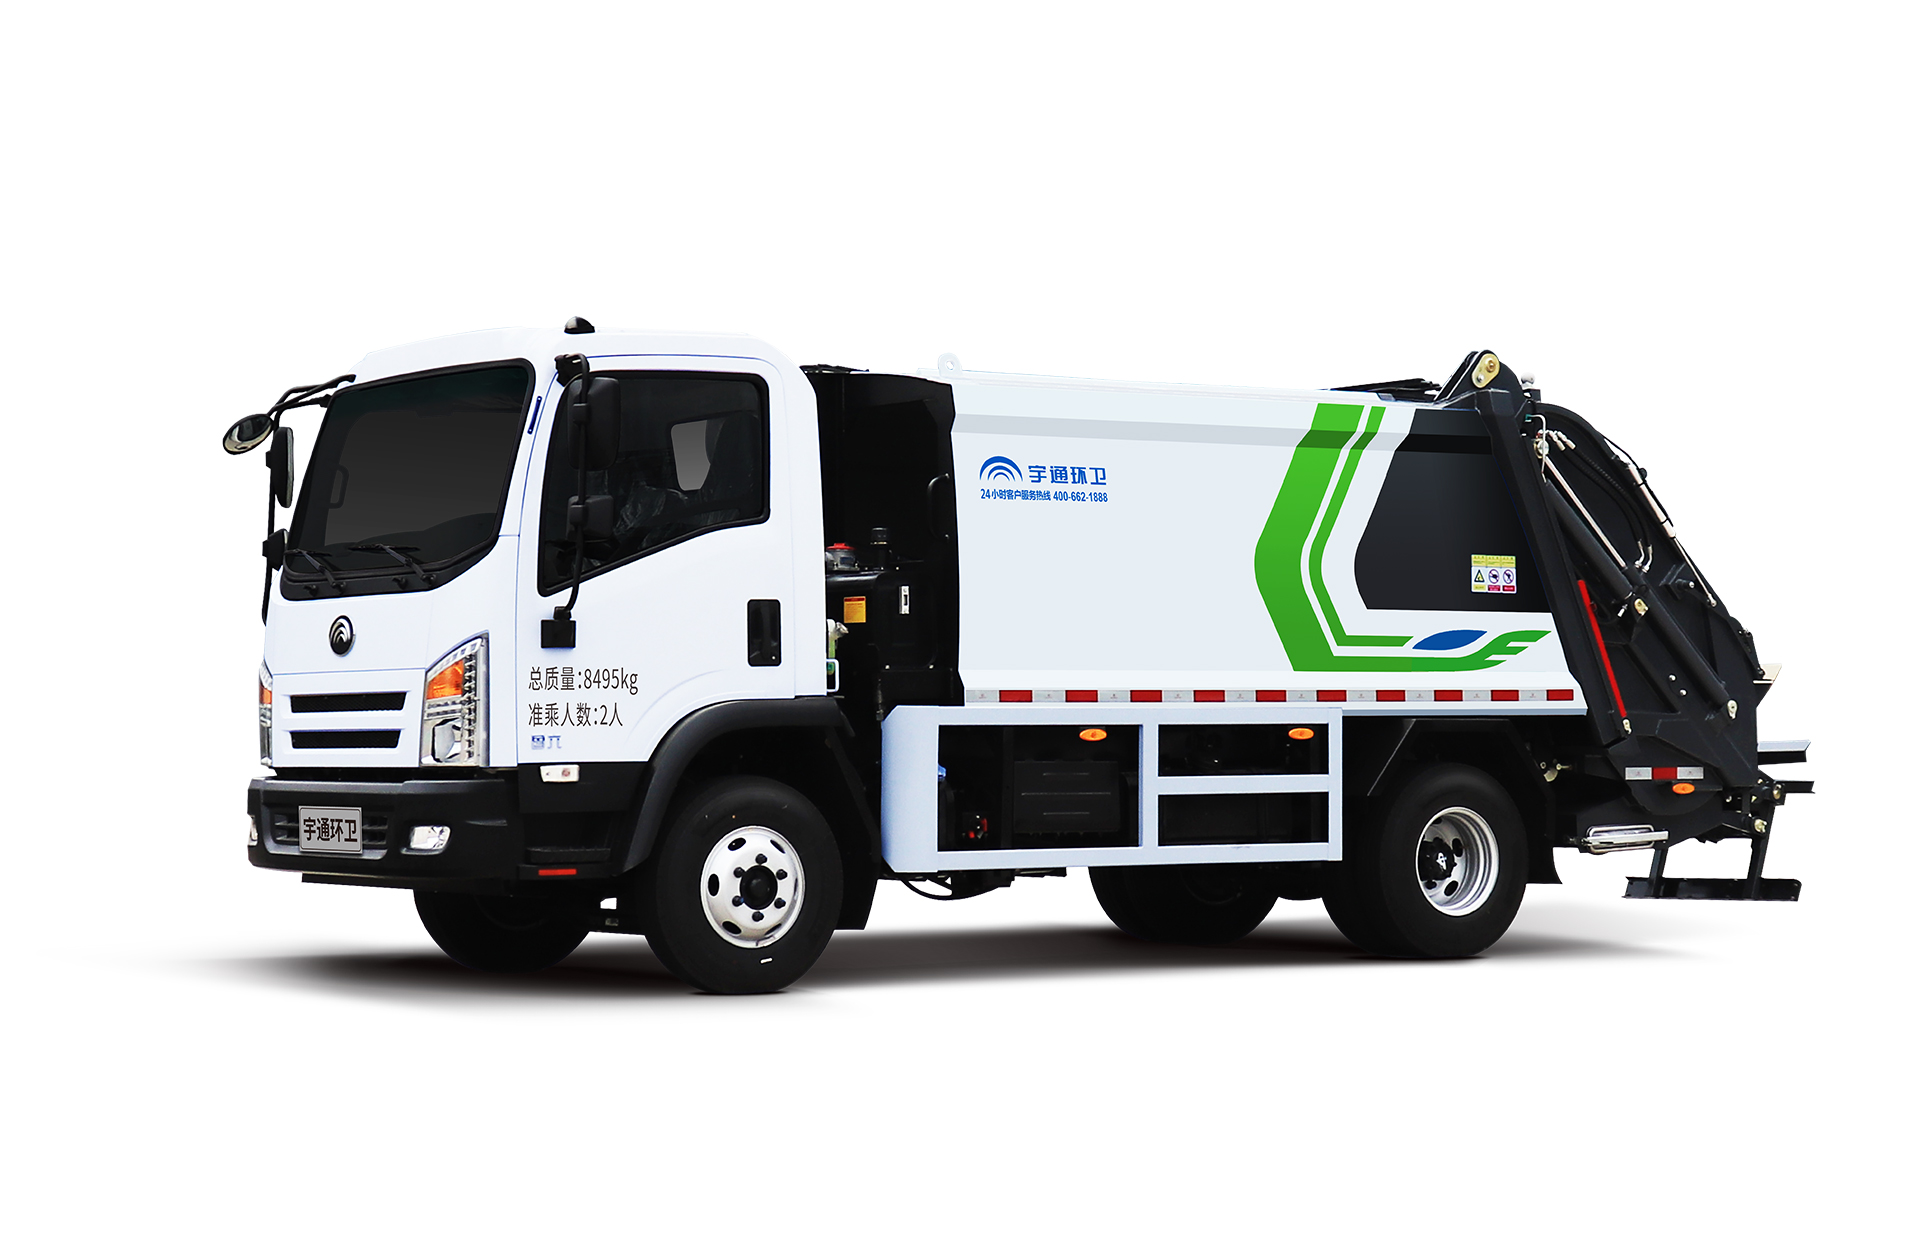 8t壓縮式垃圾車 宇通環衛壓縮式垃圾車主要具有裝載能力強、垃圾可壓縮、密封性能好等特點。